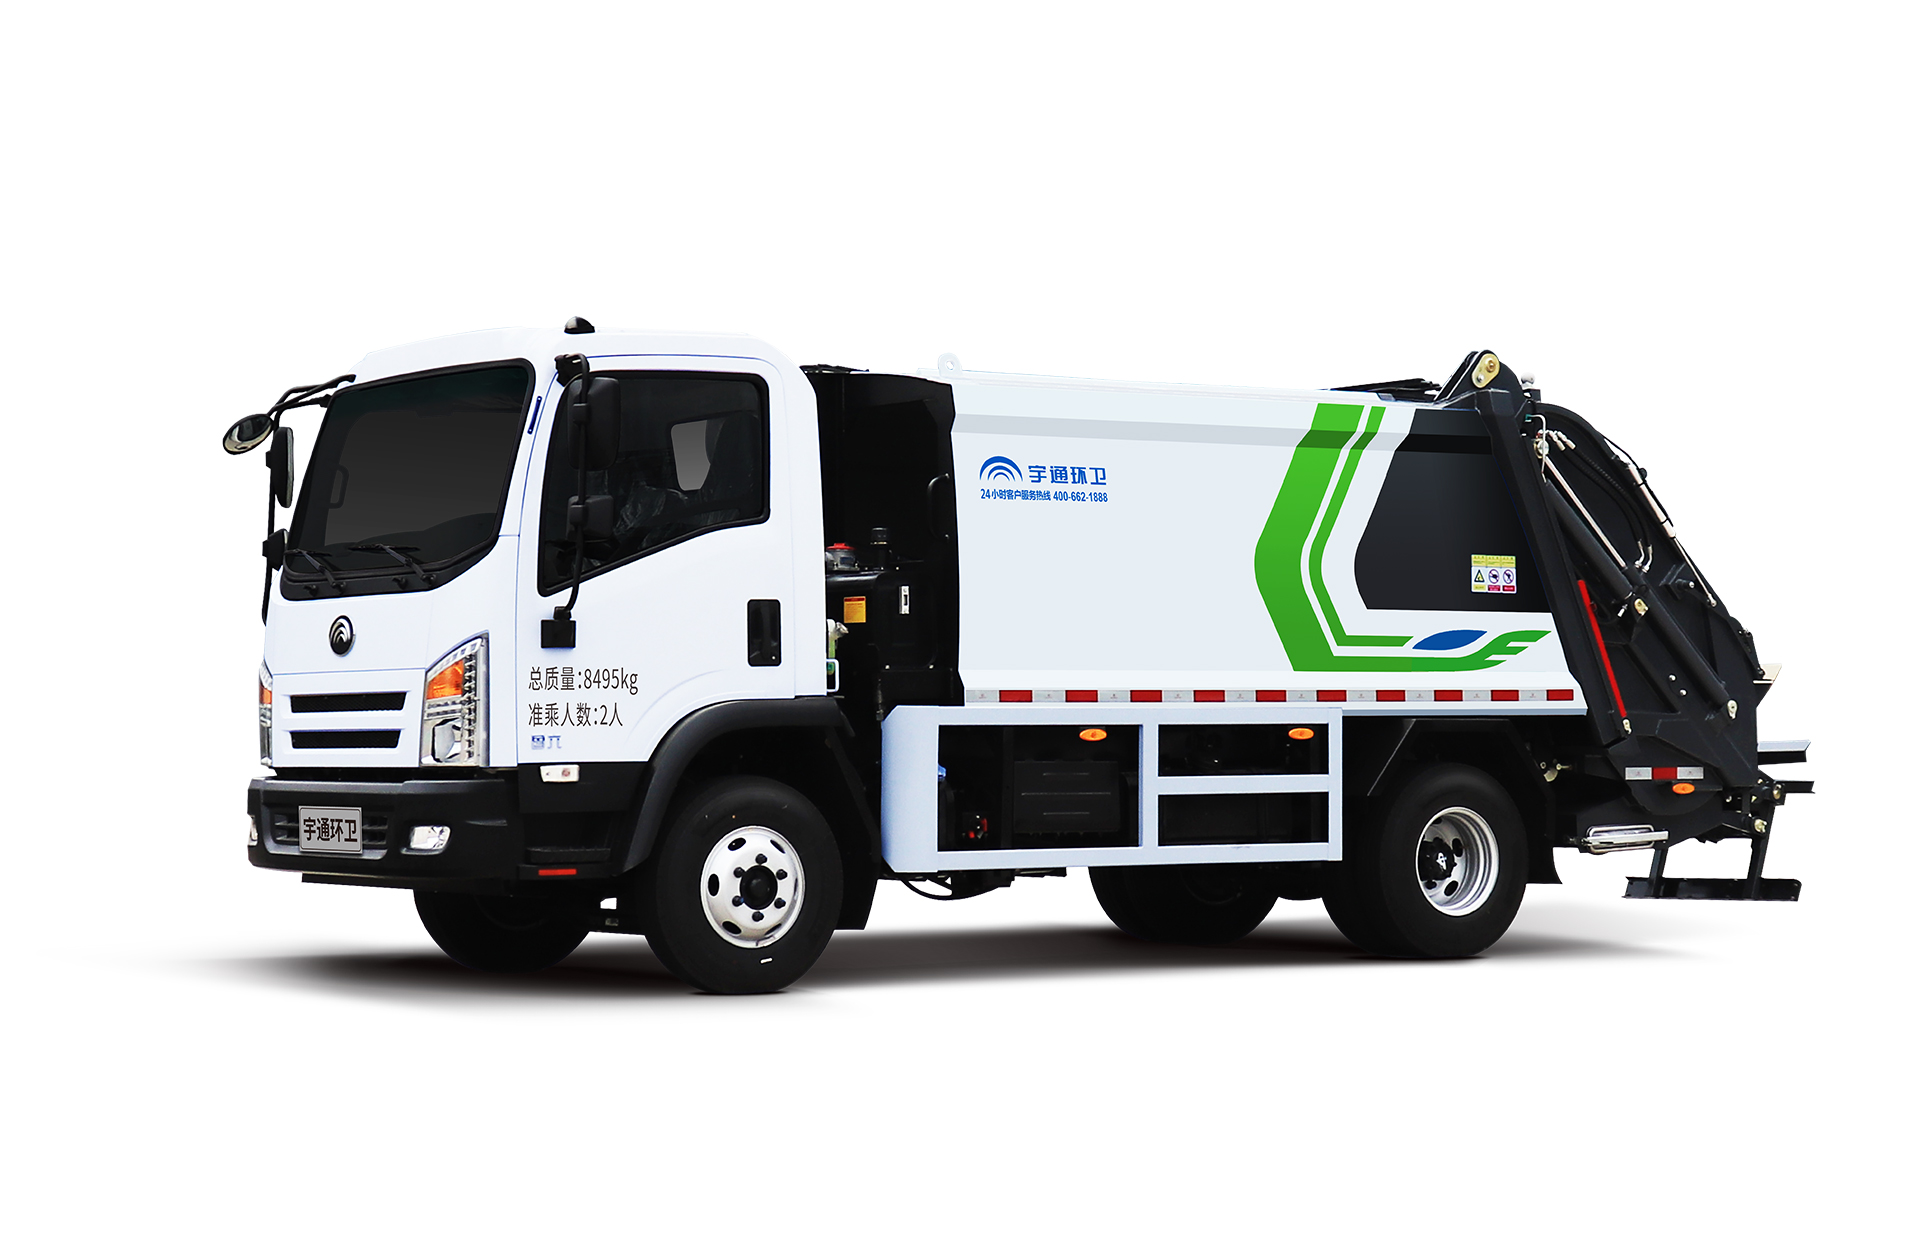 8t壓縮式垃圾車 宇通環衛壓縮式垃圾車主要具有裝載能力強、垃圾可壓縮、密封性能好等特點。